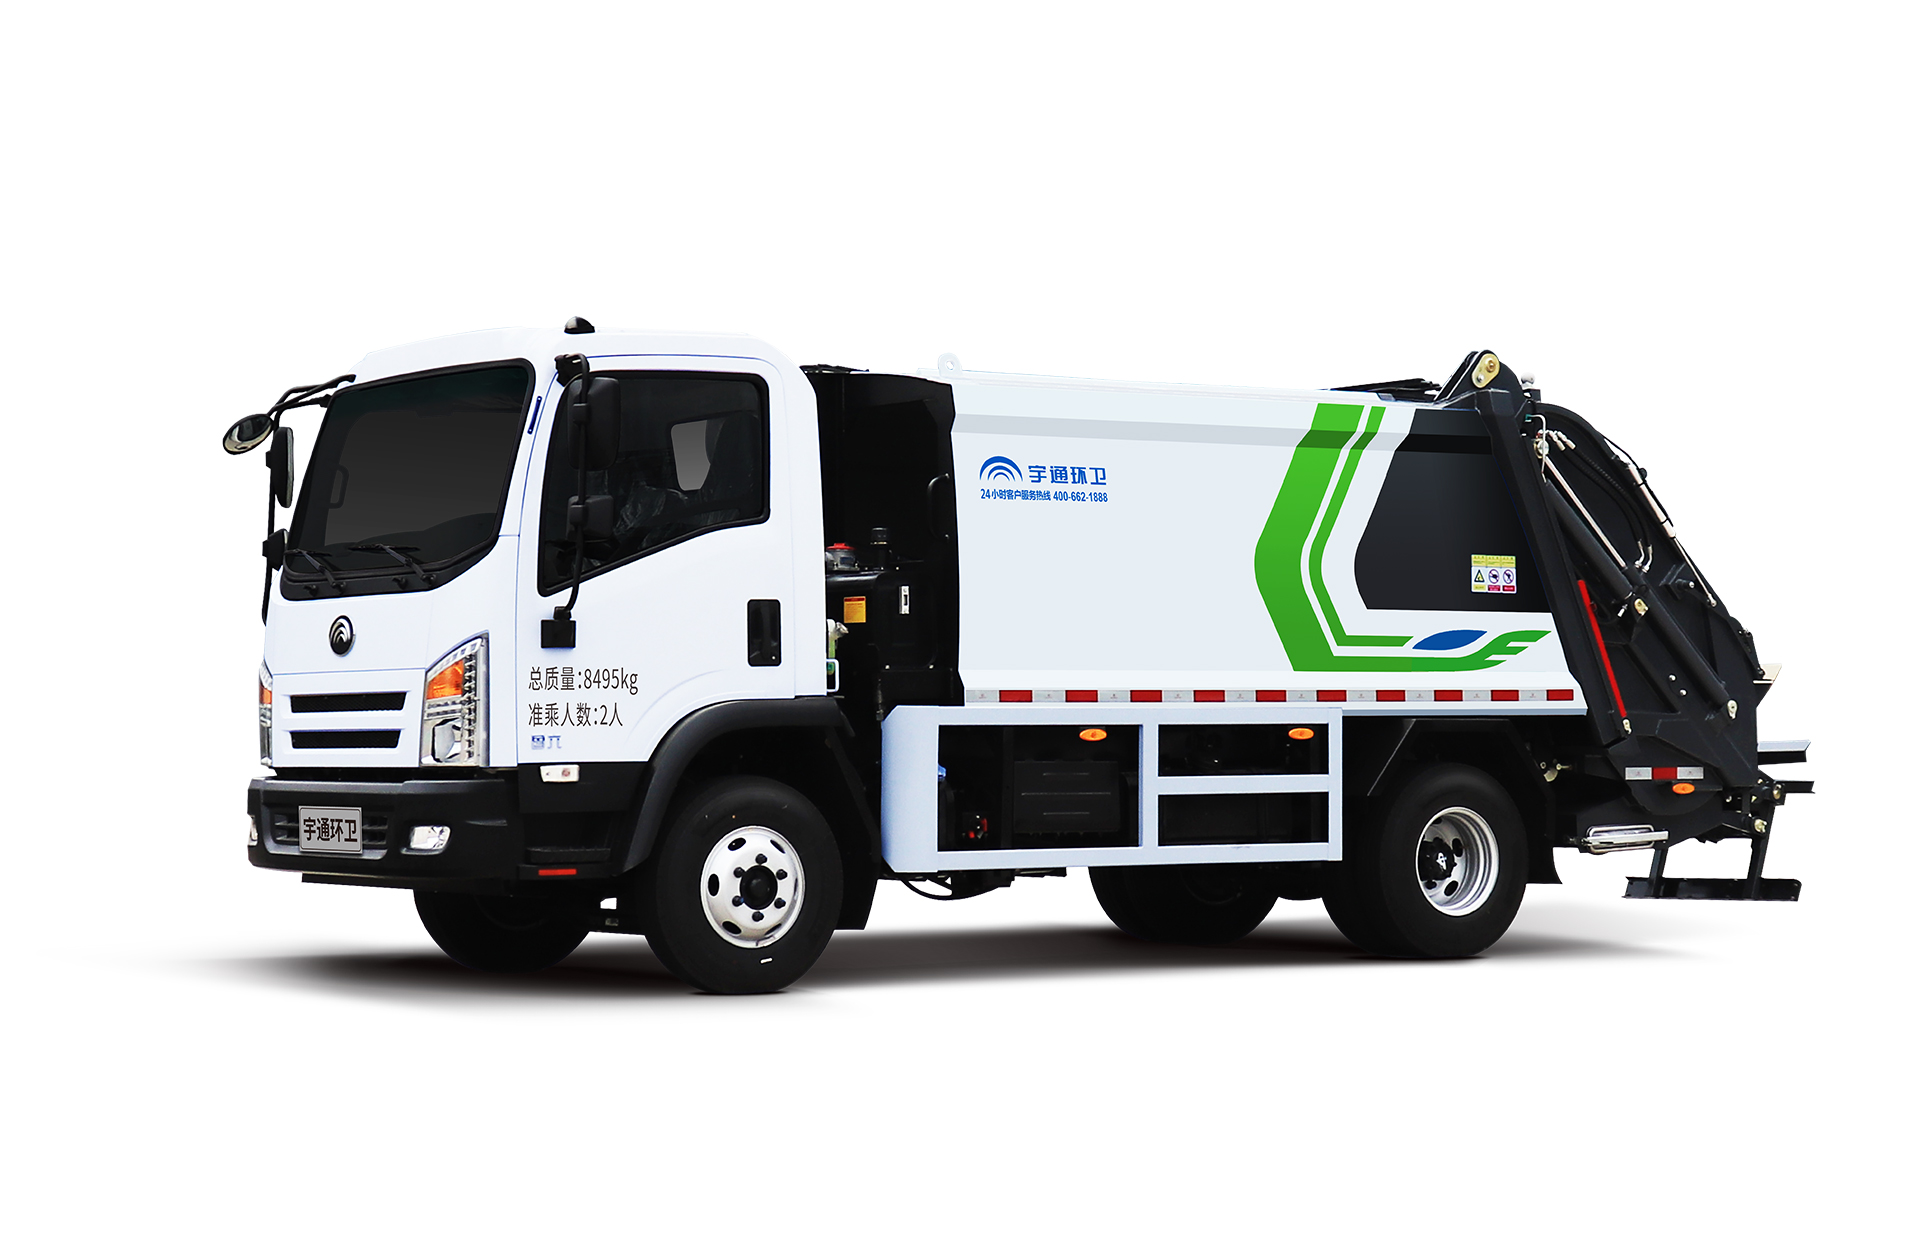 8t壓縮式垃圾車 宇通環衛壓縮式垃圾車主要具有裝載能力強、垃圾可壓縮、密封性能好等特點。